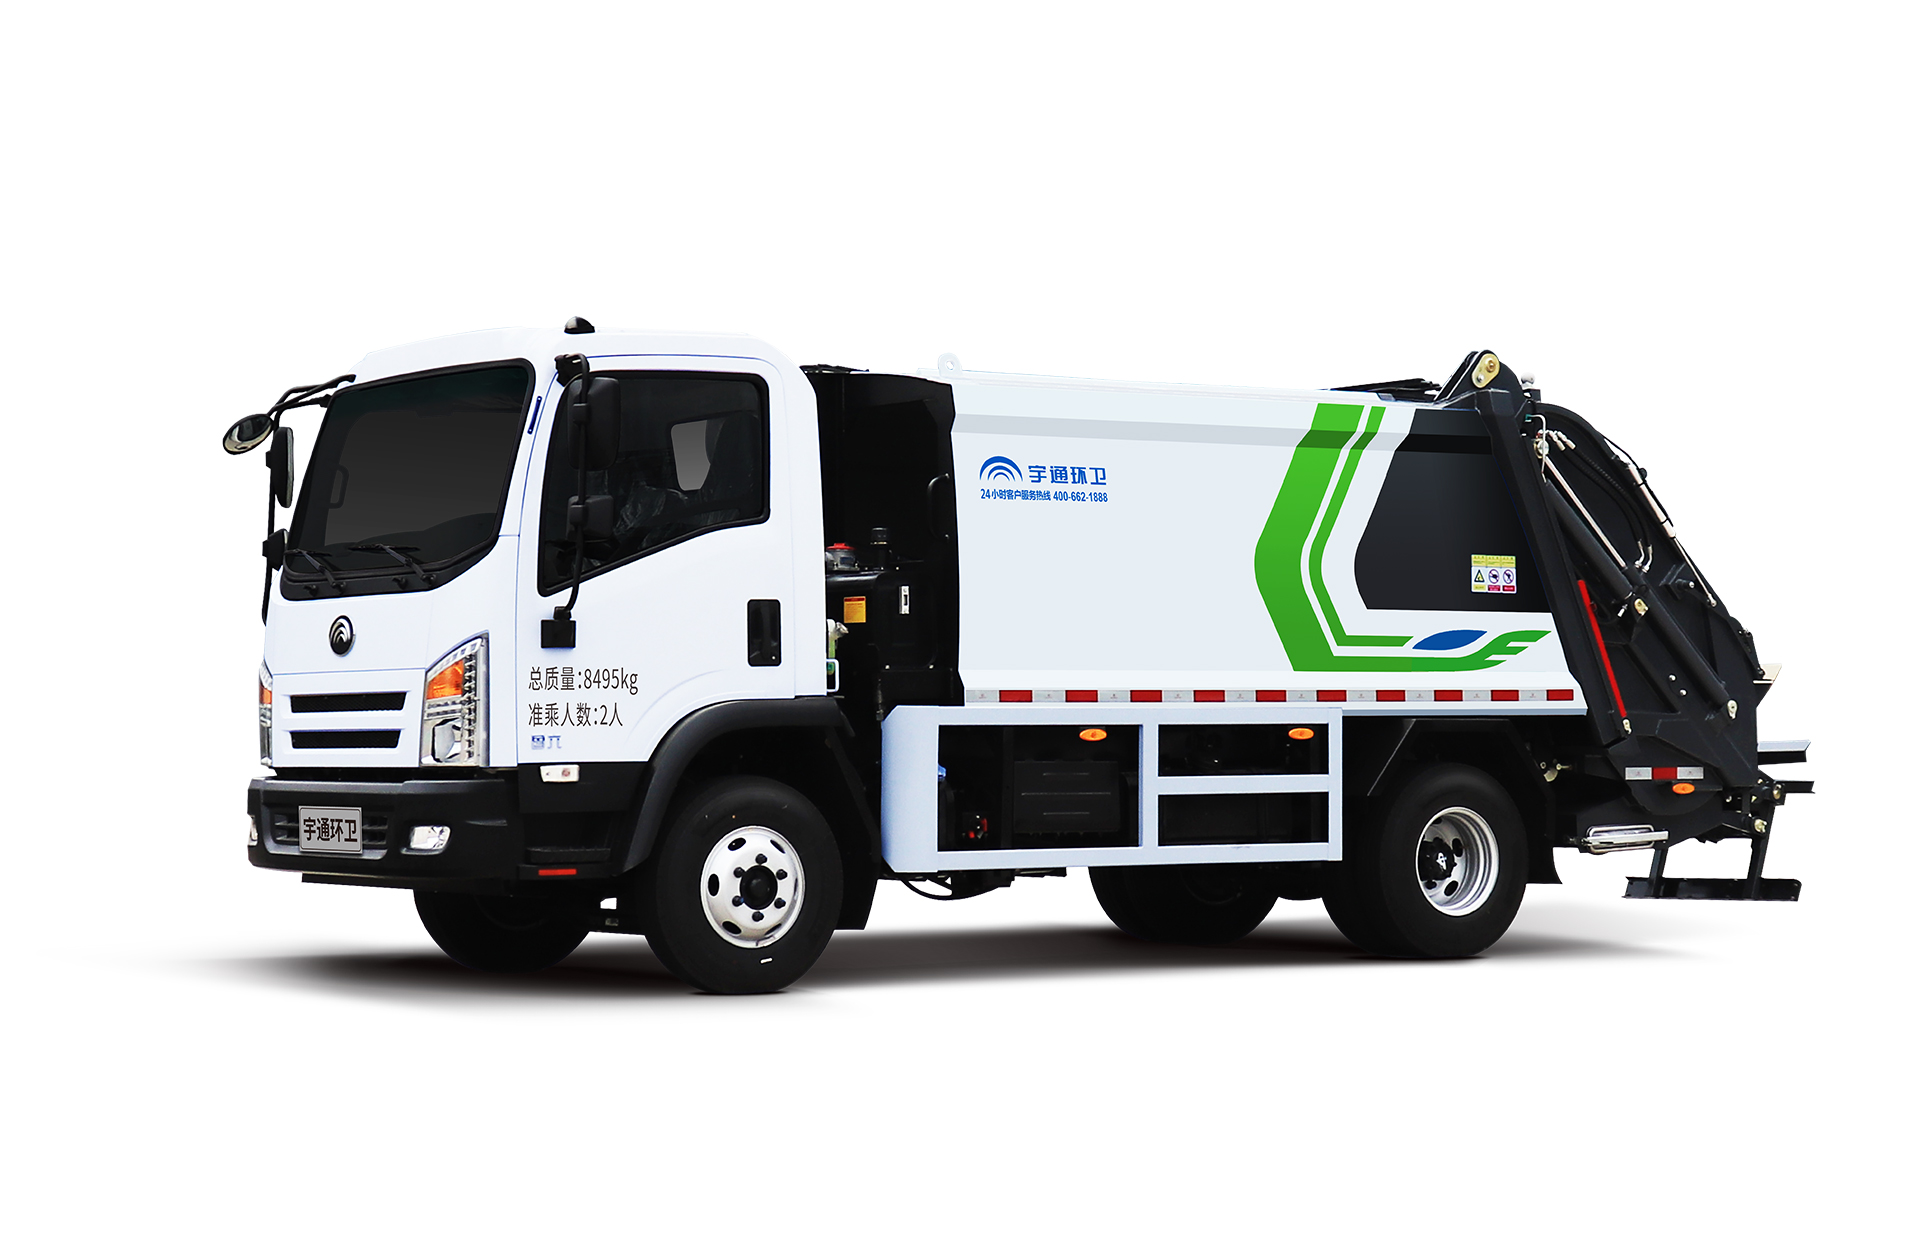 8t壓縮式垃圾車 宇通環衛壓縮式垃圾車主要具有裝載能力強、垃圾可壓縮、密封性能好等特點。